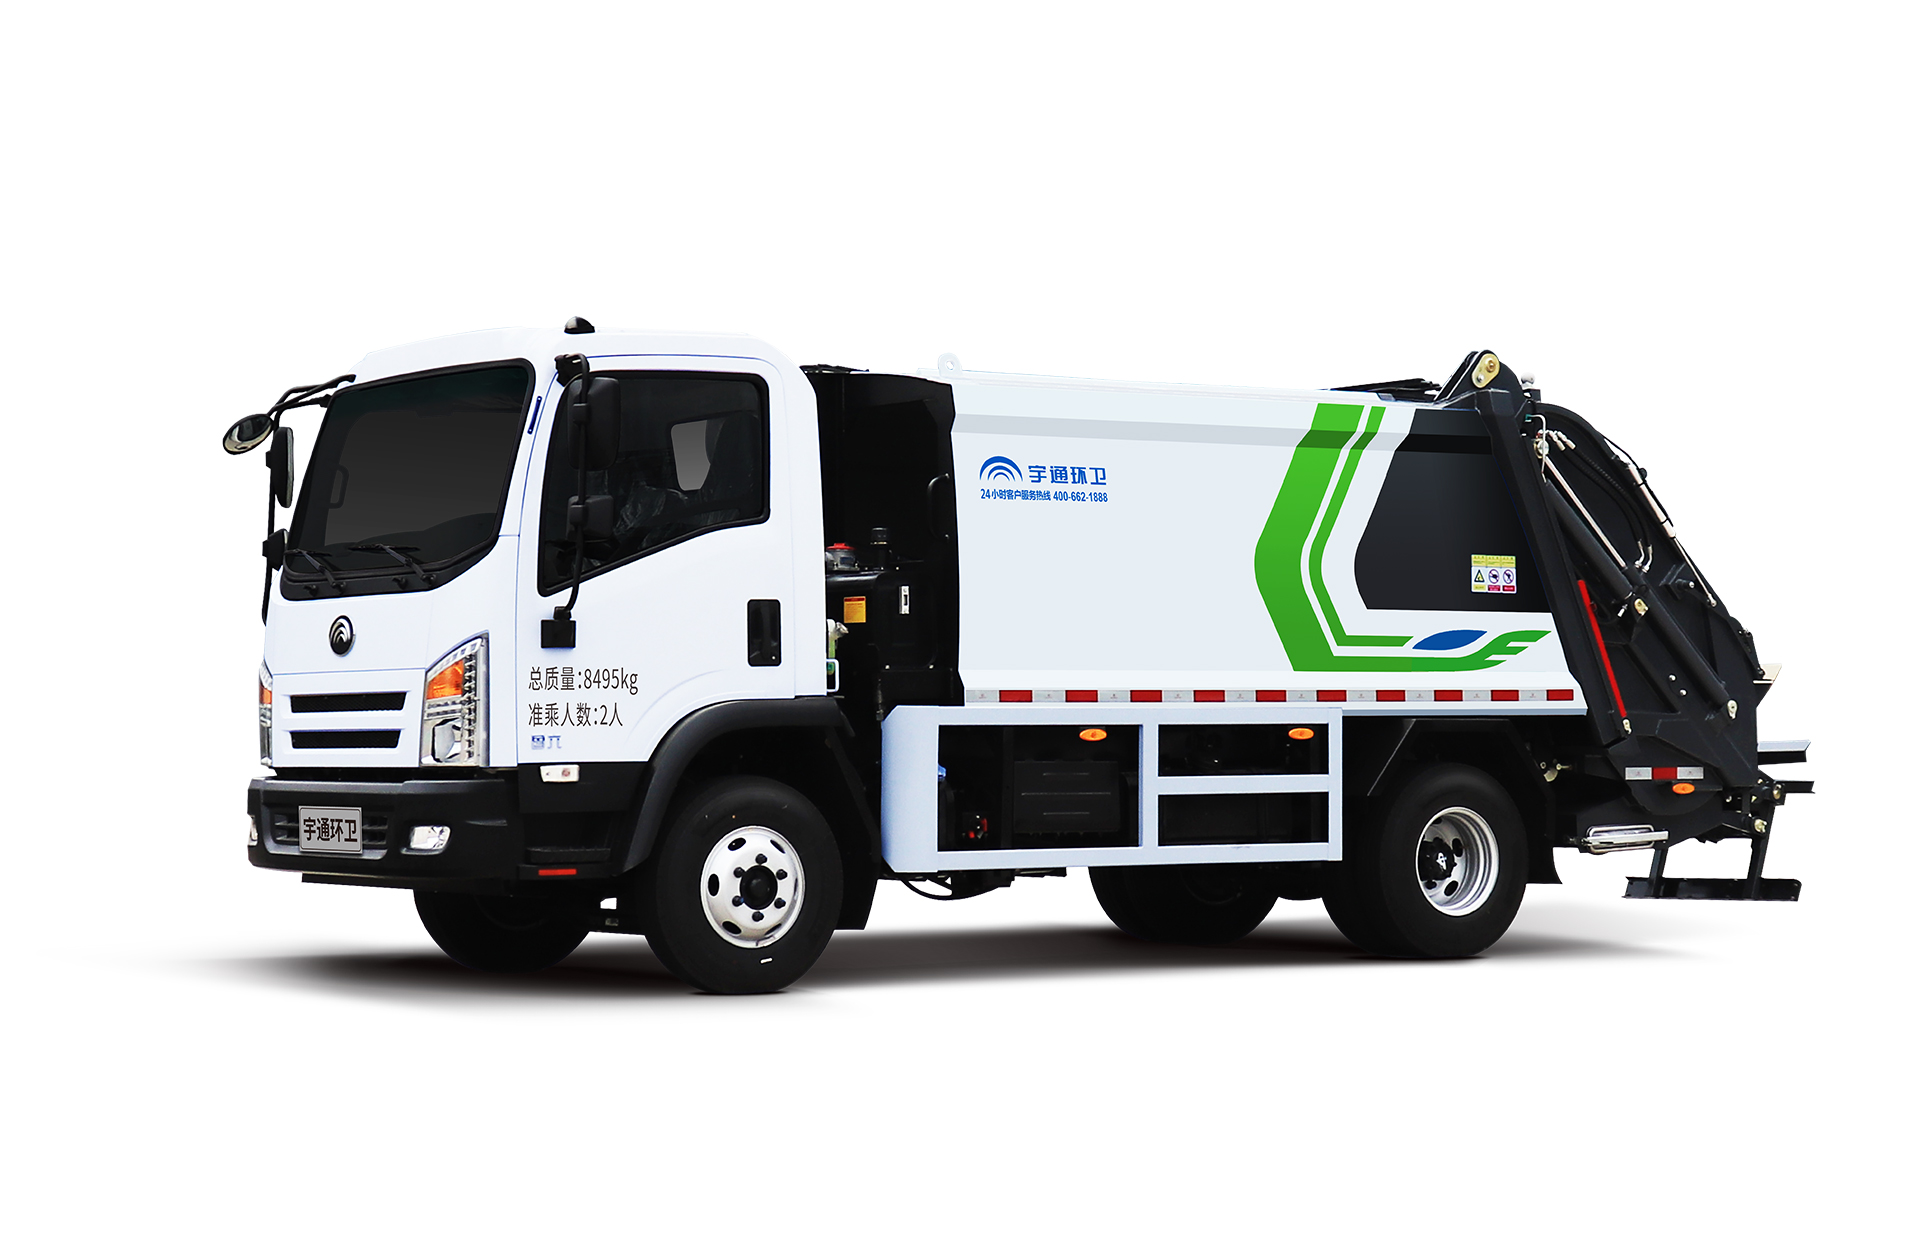 8t壓縮式垃圾車 宇通環衛壓縮式垃圾車主要具有裝載能力強、垃圾可壓縮、密封性能好等特點。